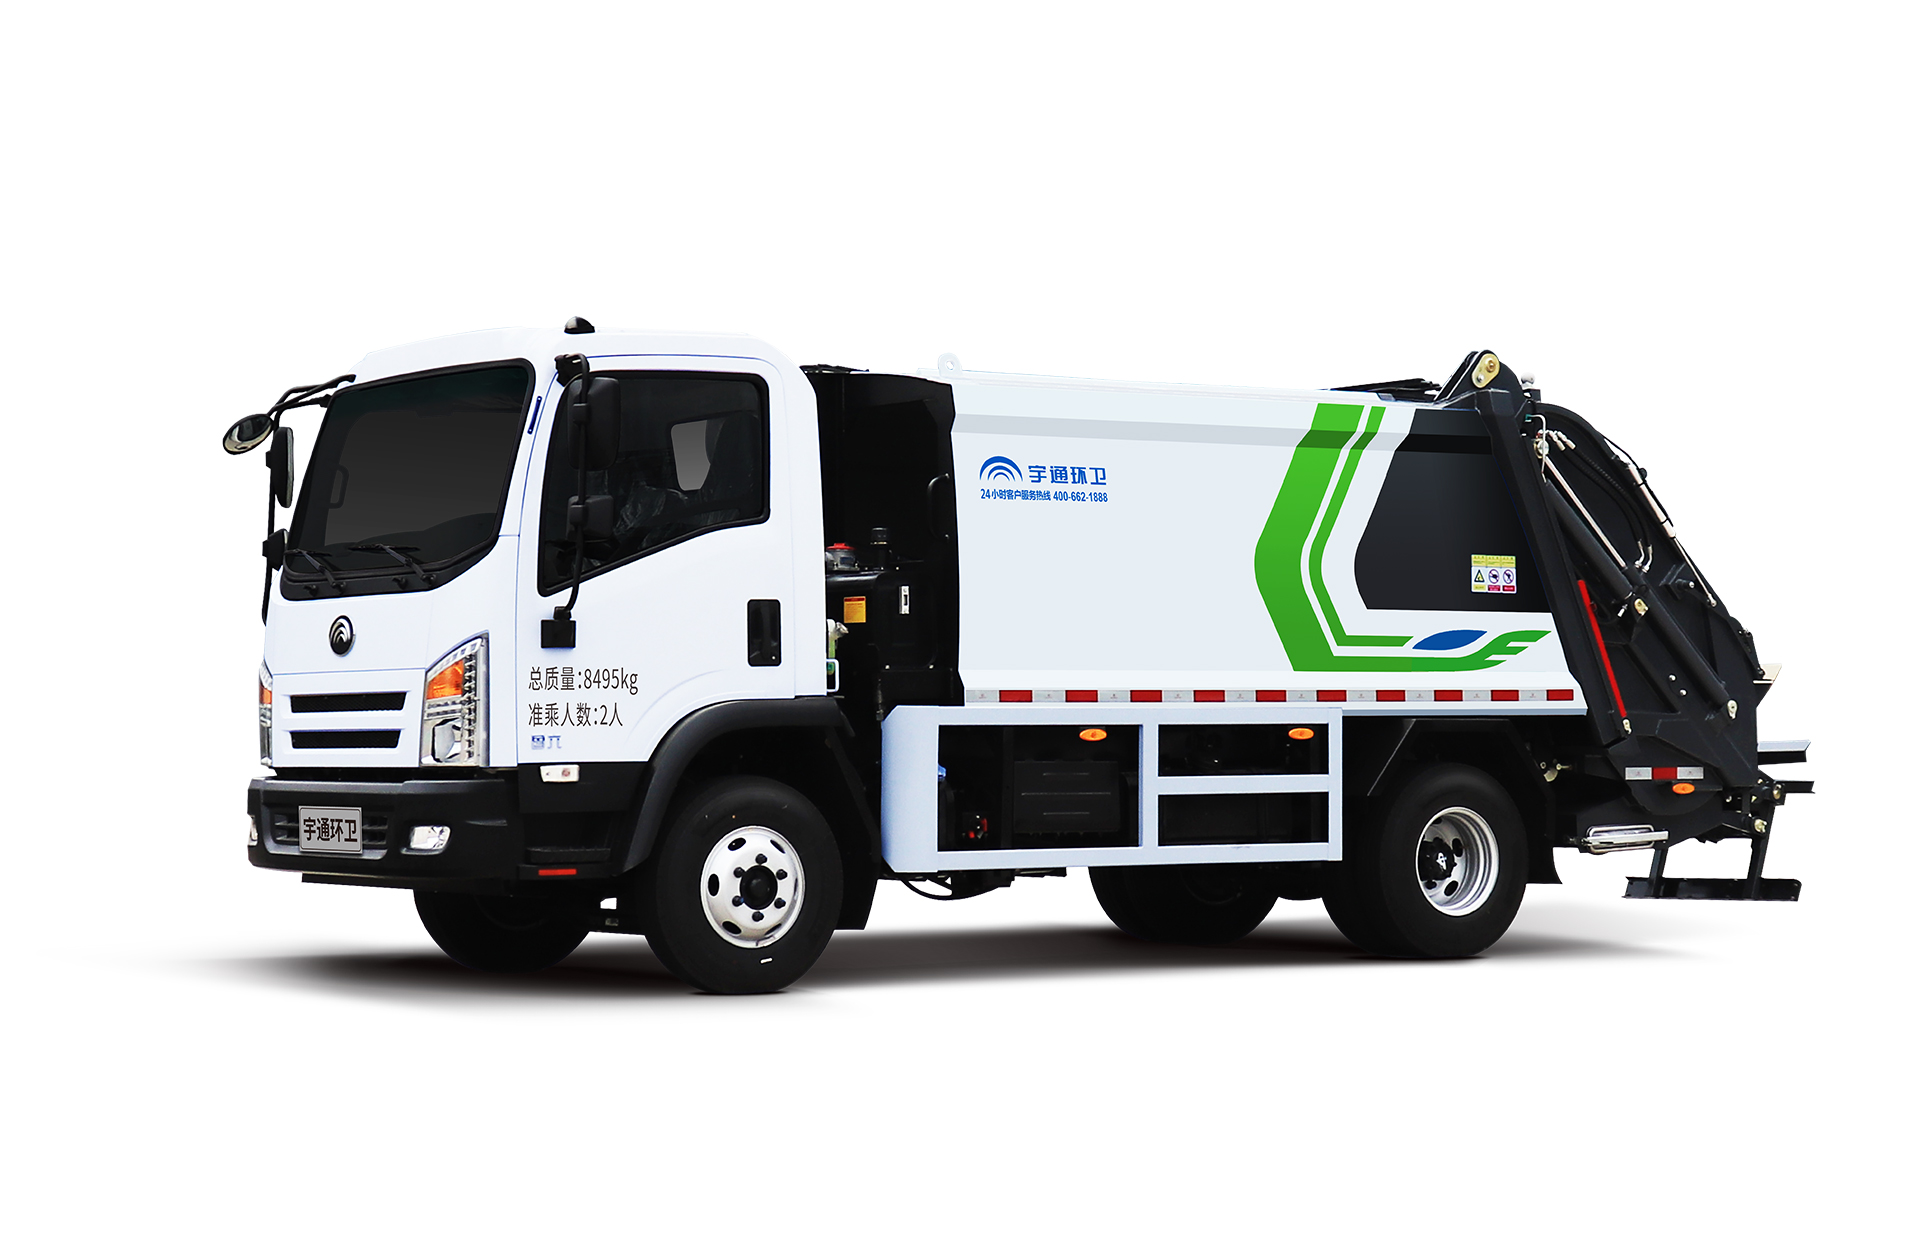 8t壓縮式垃圾車 宇通環衛壓縮式垃圾車主要具有裝載能力強、垃圾可壓縮、密封性能好等特點。